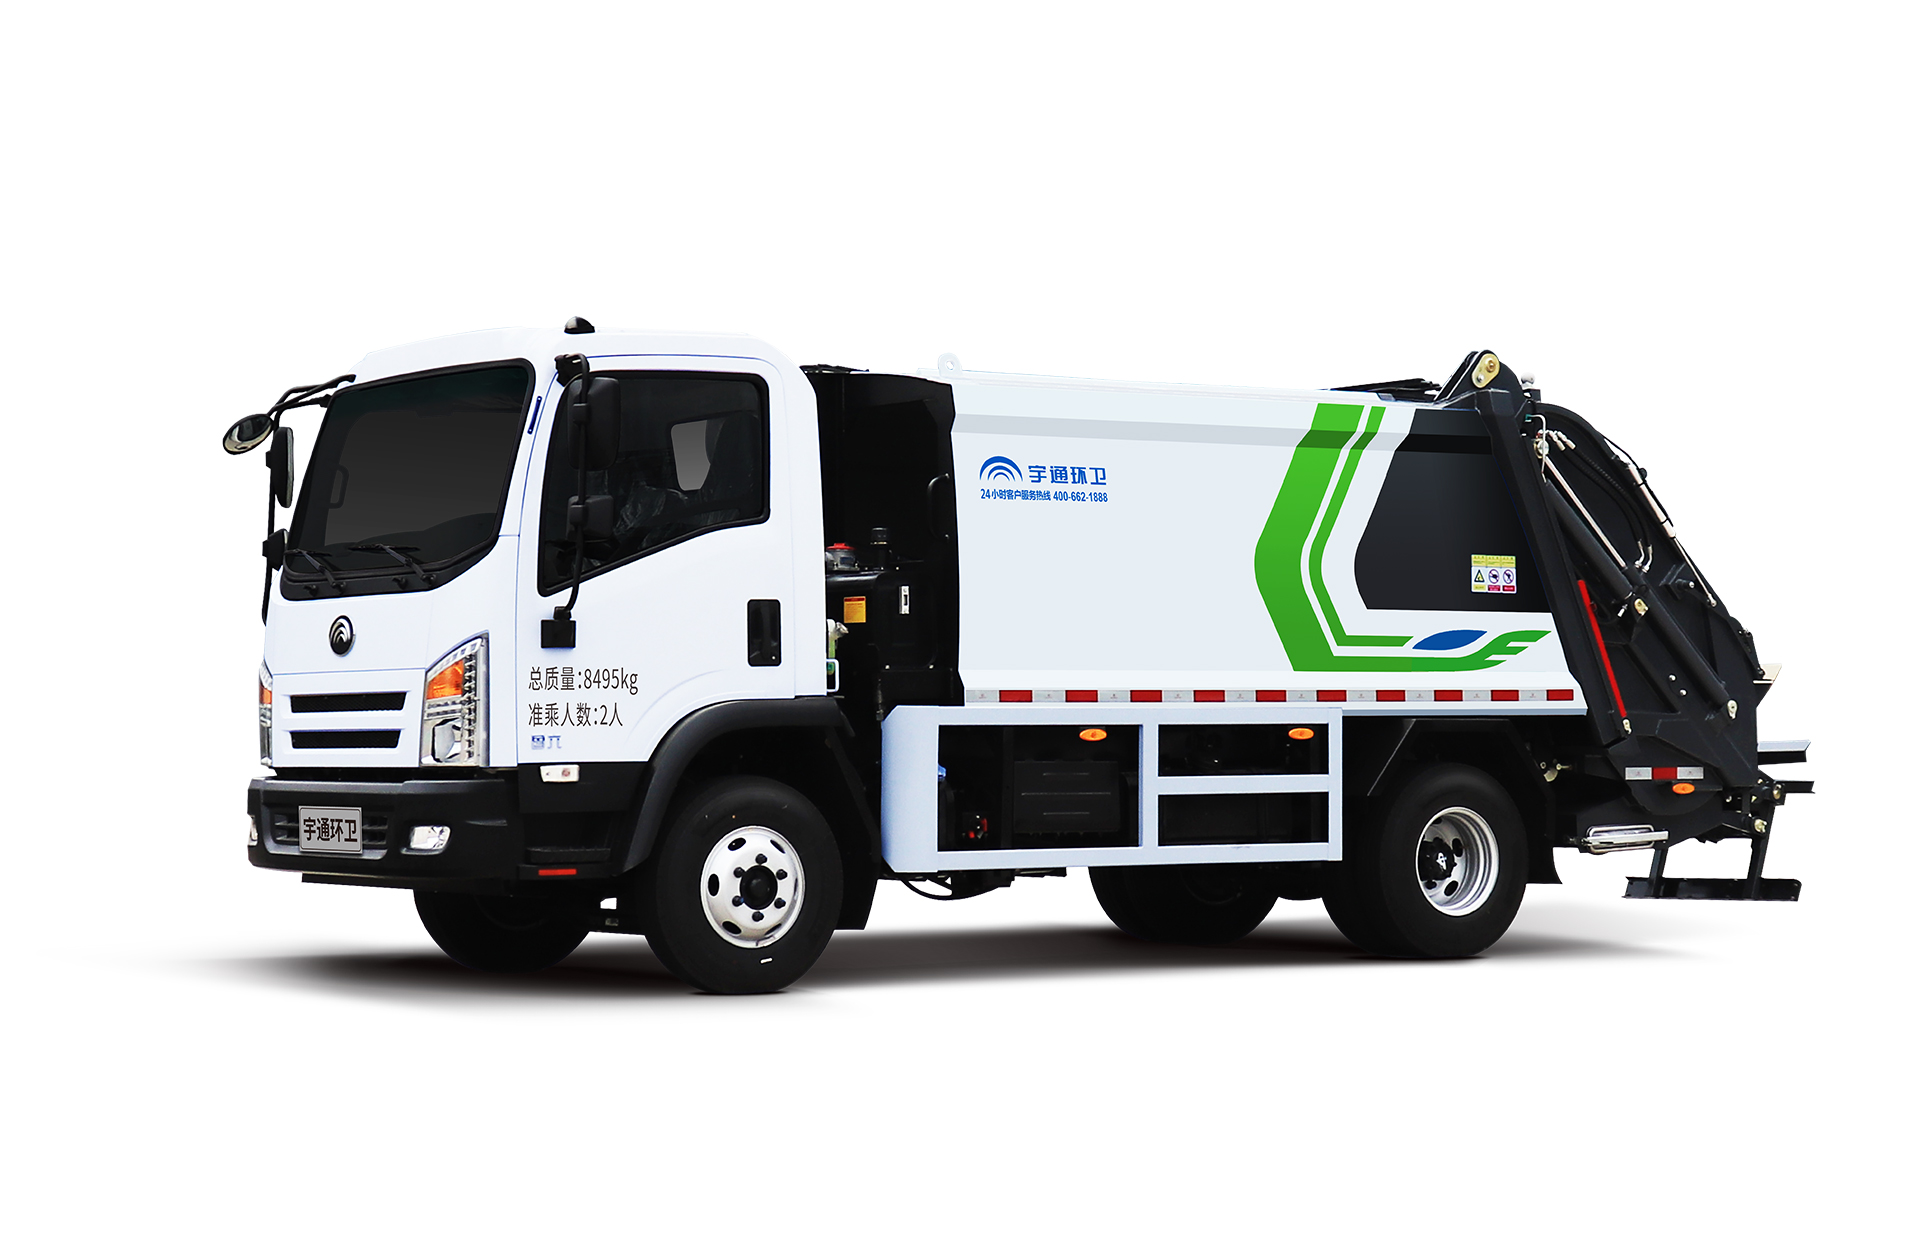 8t壓縮式垃圾車 宇通環衛壓縮式垃圾車主要具有裝載能力強、垃圾可壓縮、密封性能好等特點。